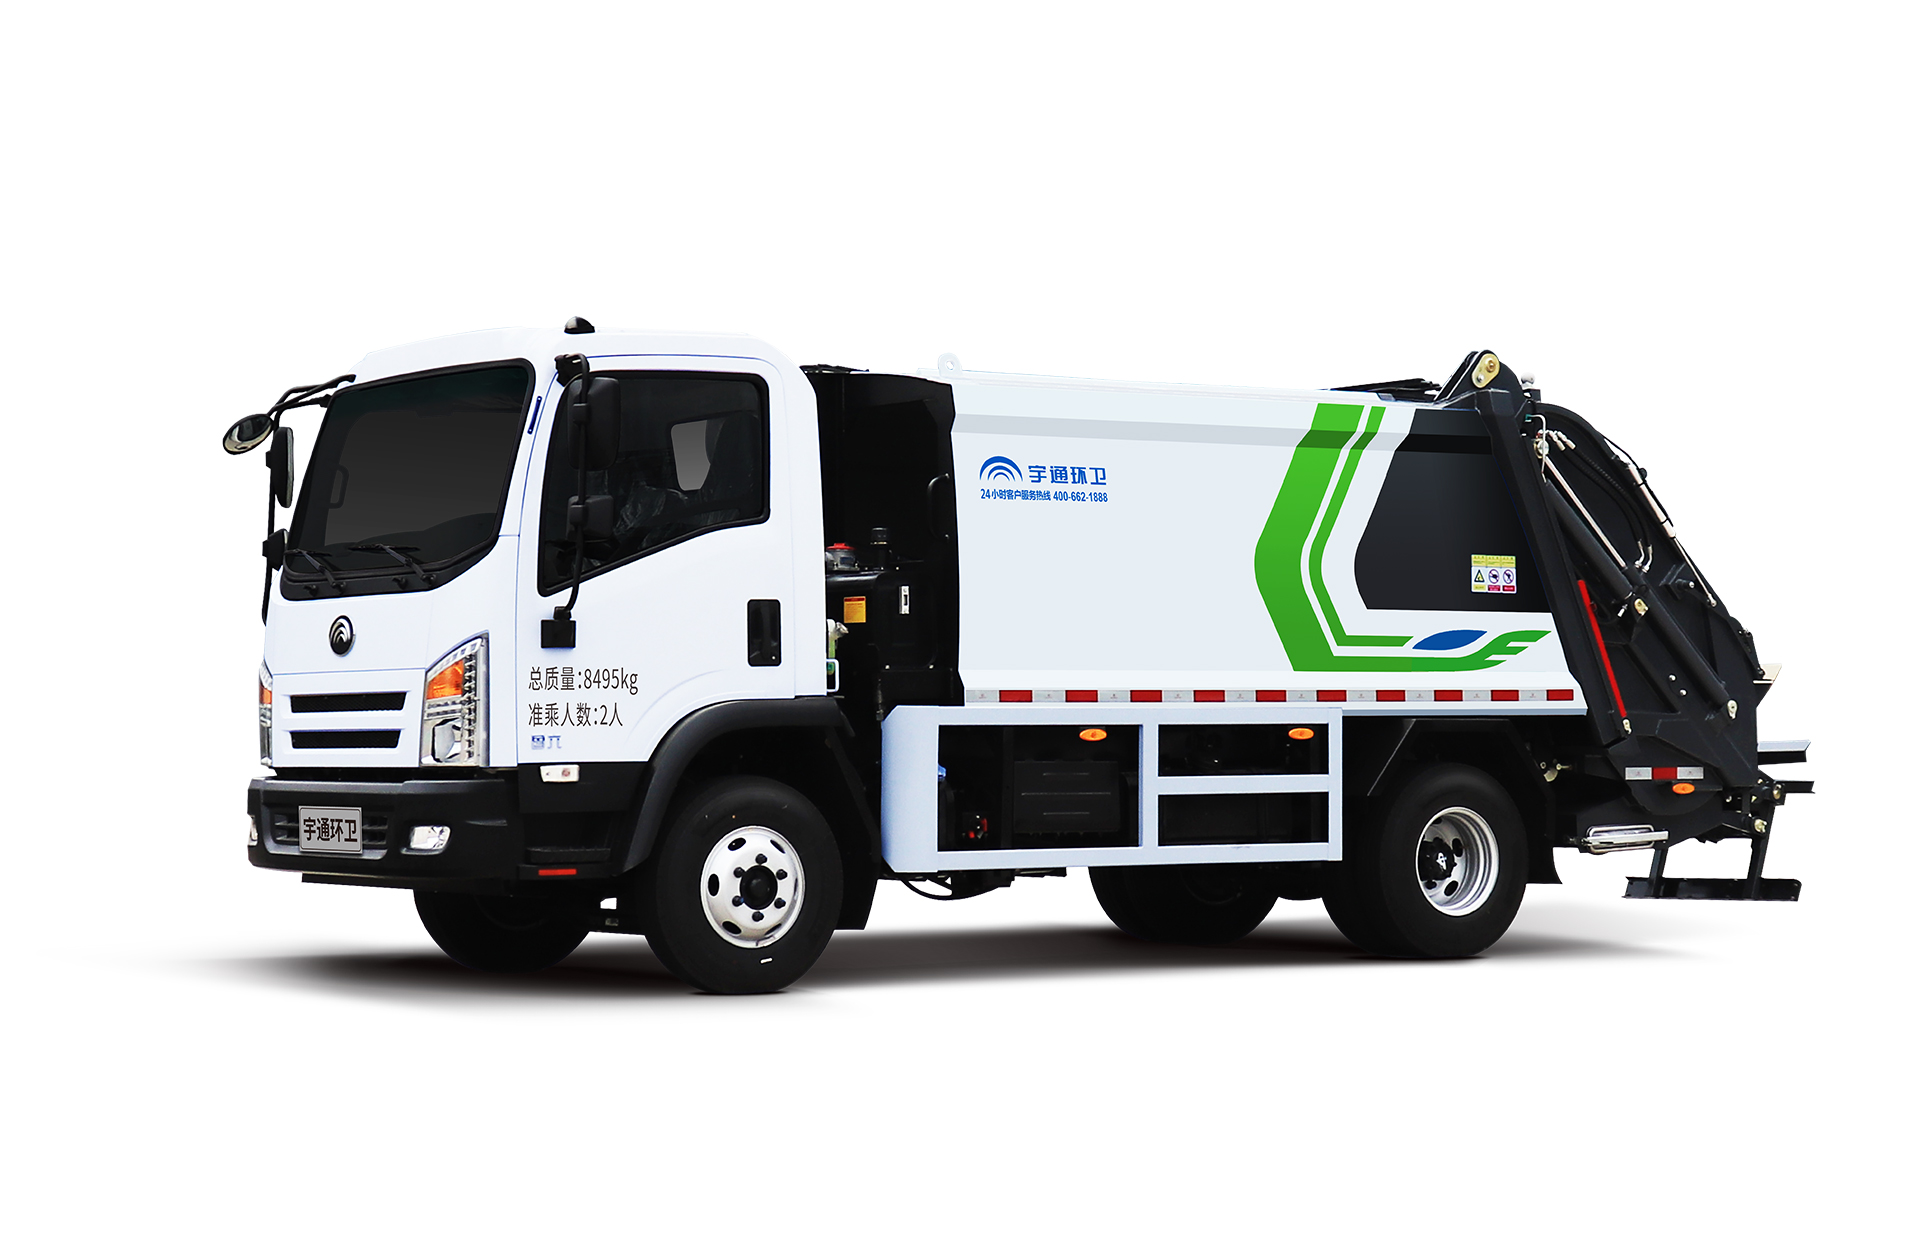 8t壓縮式垃圾車 宇通環衛壓縮式垃圾車主要具有裝載能力強、垃圾可壓縮、密封性能好等特點。